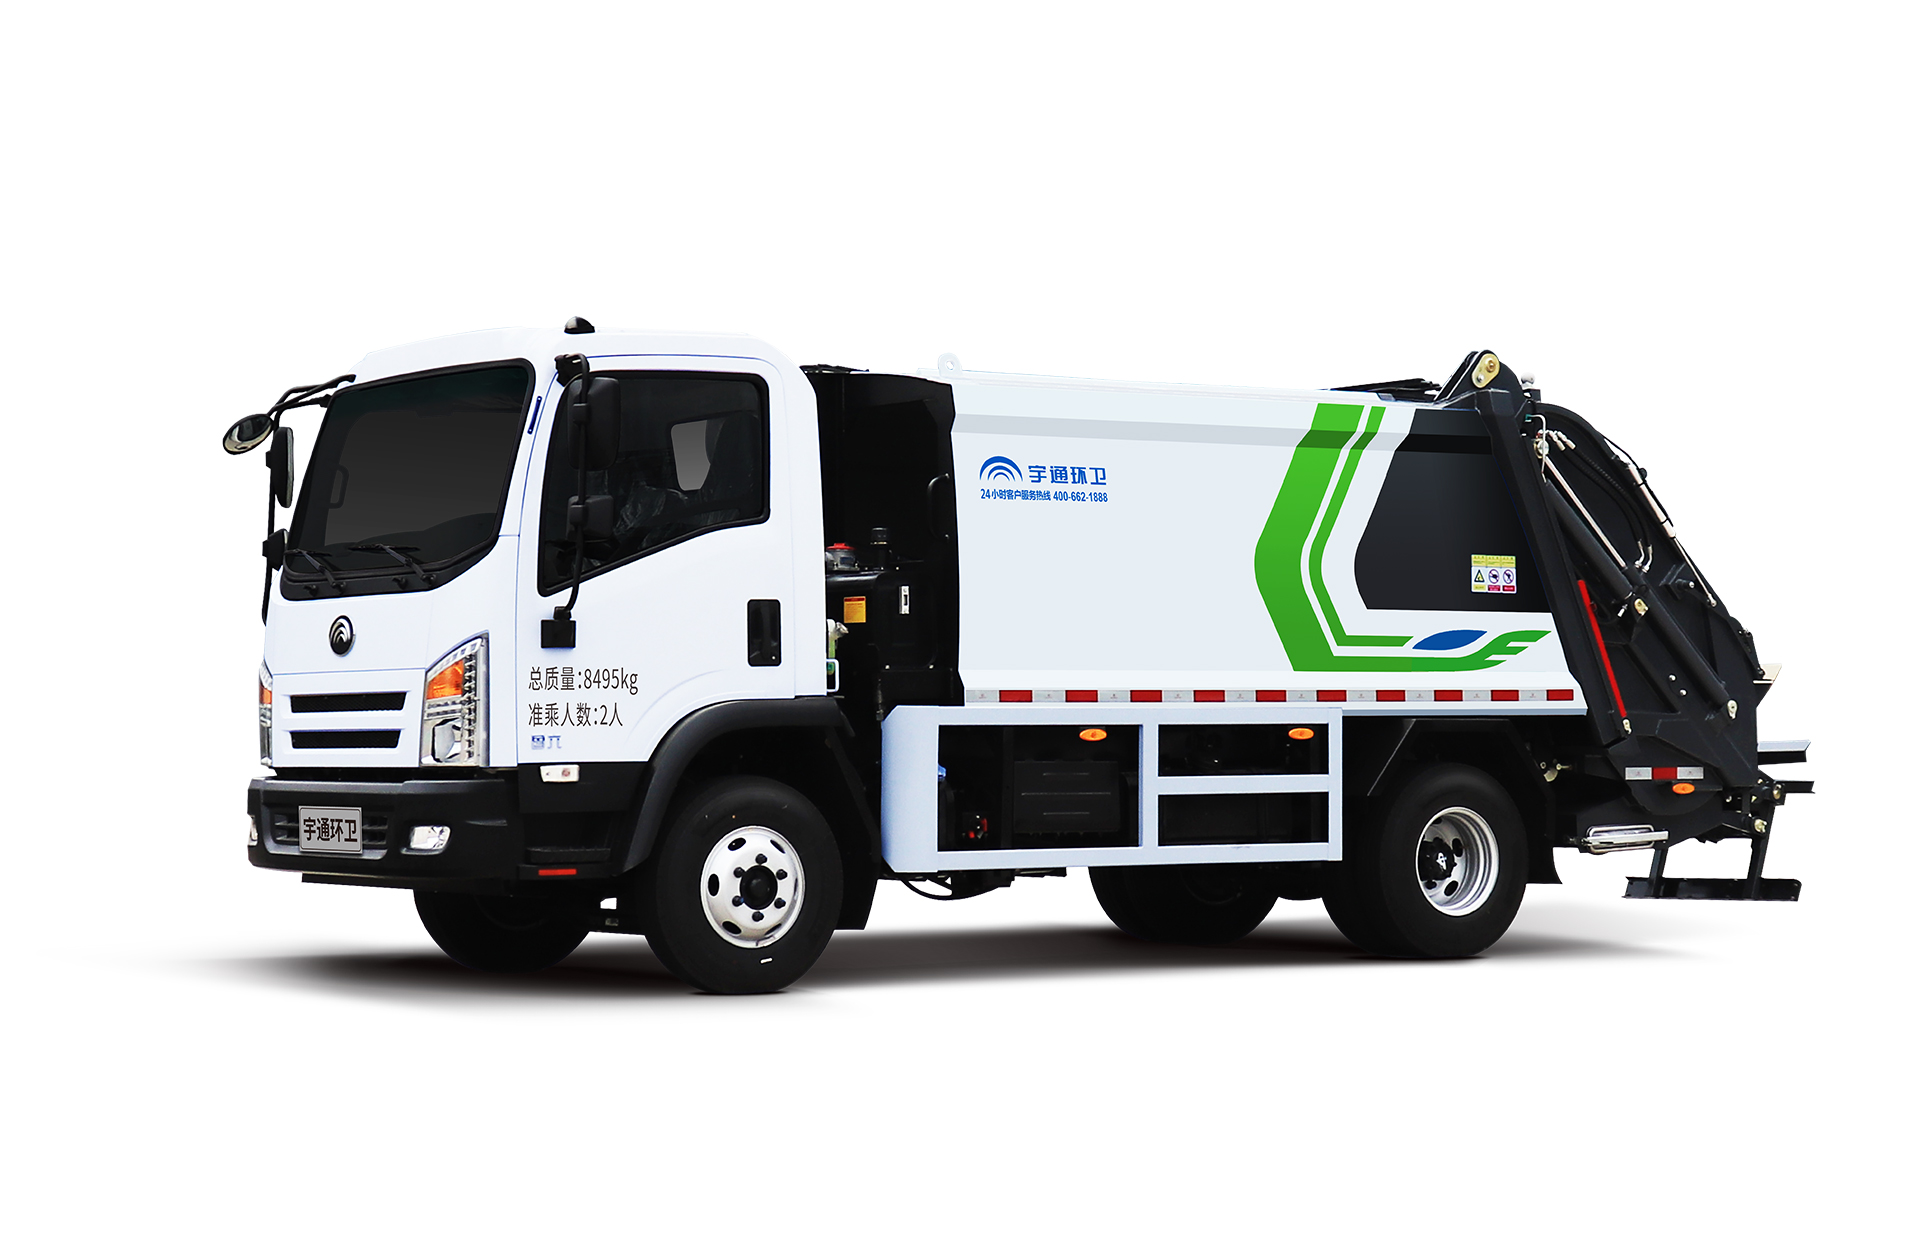 8t壓縮式垃圾車 宇通環衛壓縮式垃圾車主要具有裝載能力強、垃圾可壓縮、密封性能好等特點。